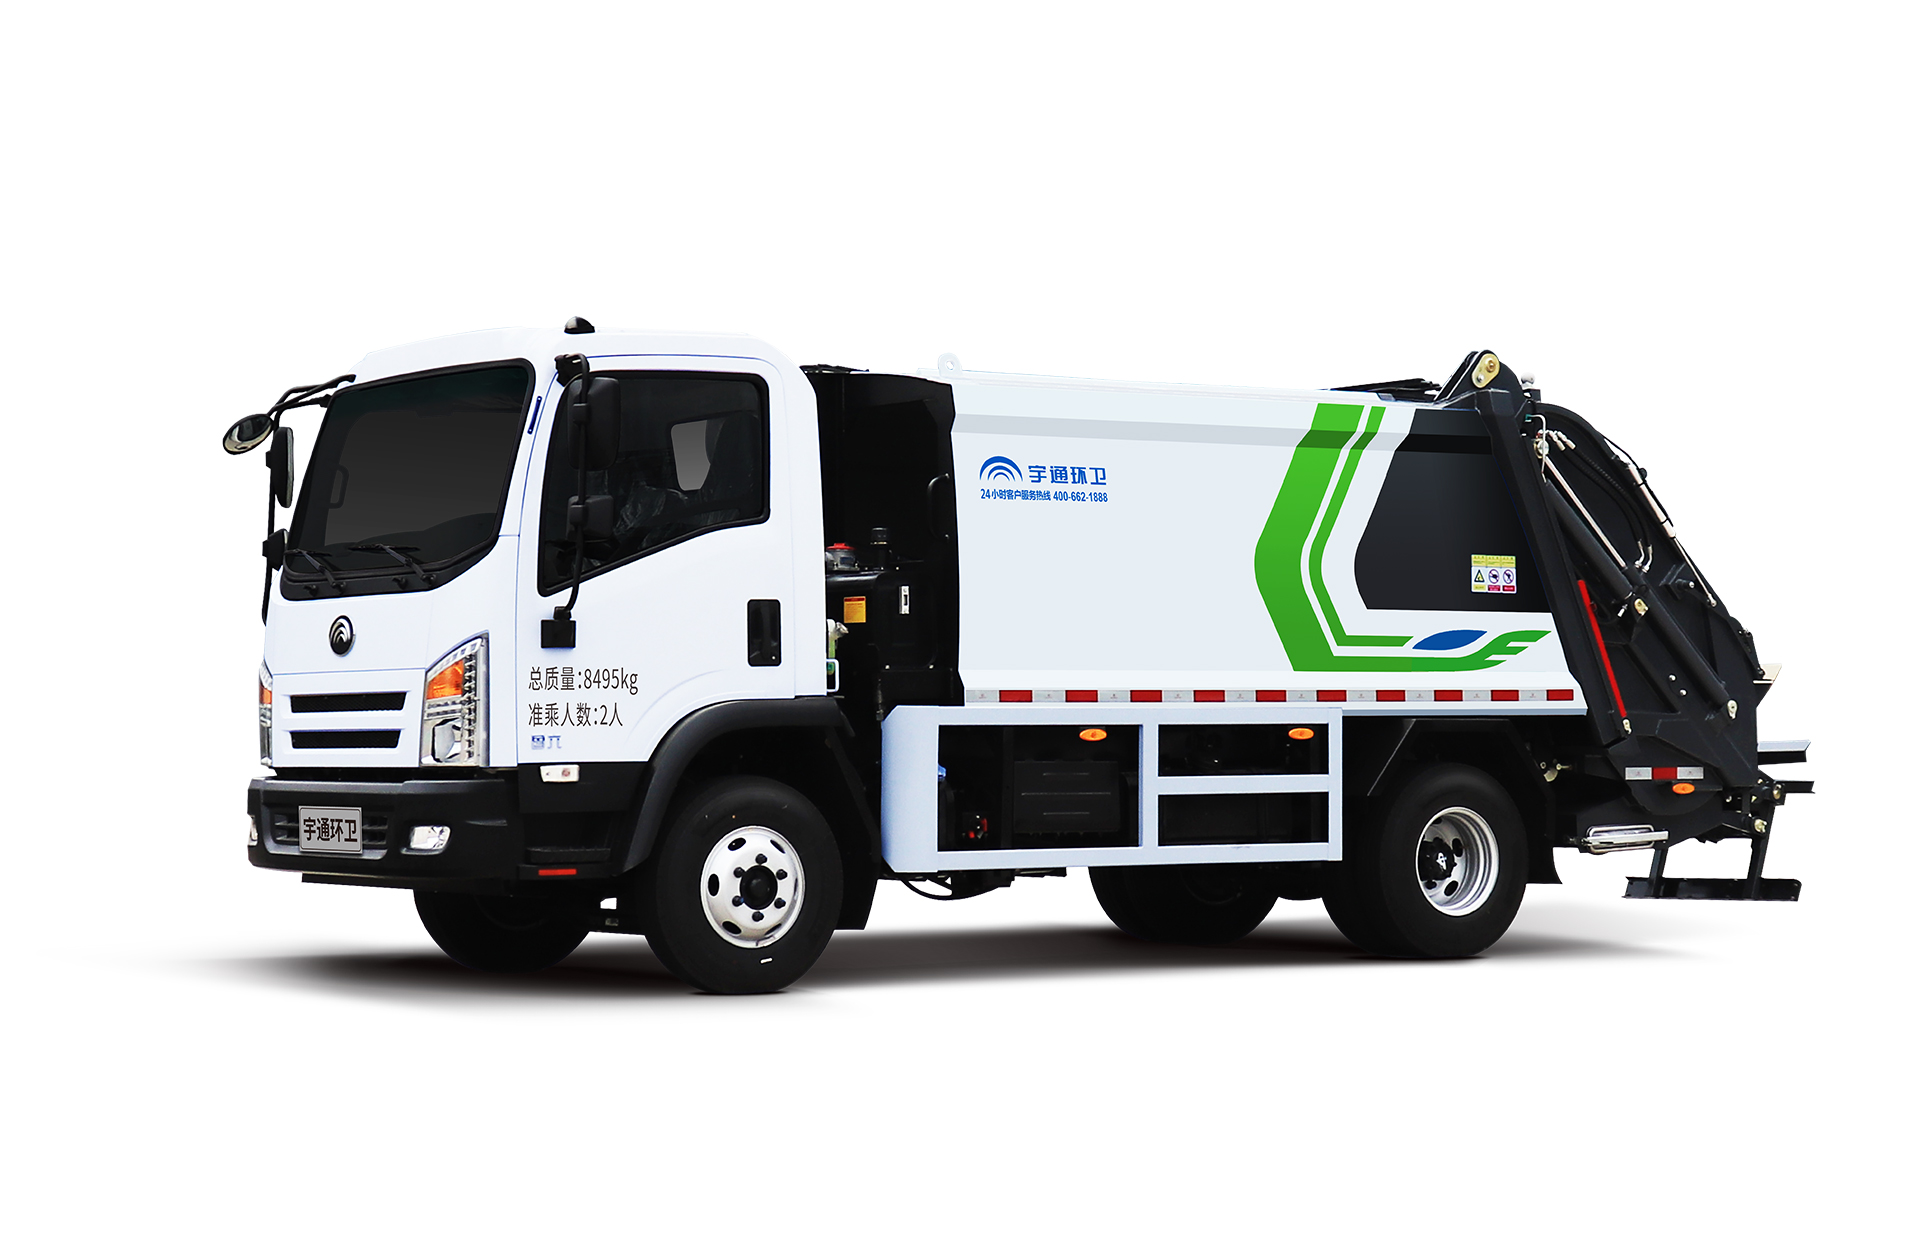 8t壓縮式垃圾車 宇通環衛壓縮式垃圾車主要具有裝載能力強、垃圾可壓縮、密封性能好等特點。